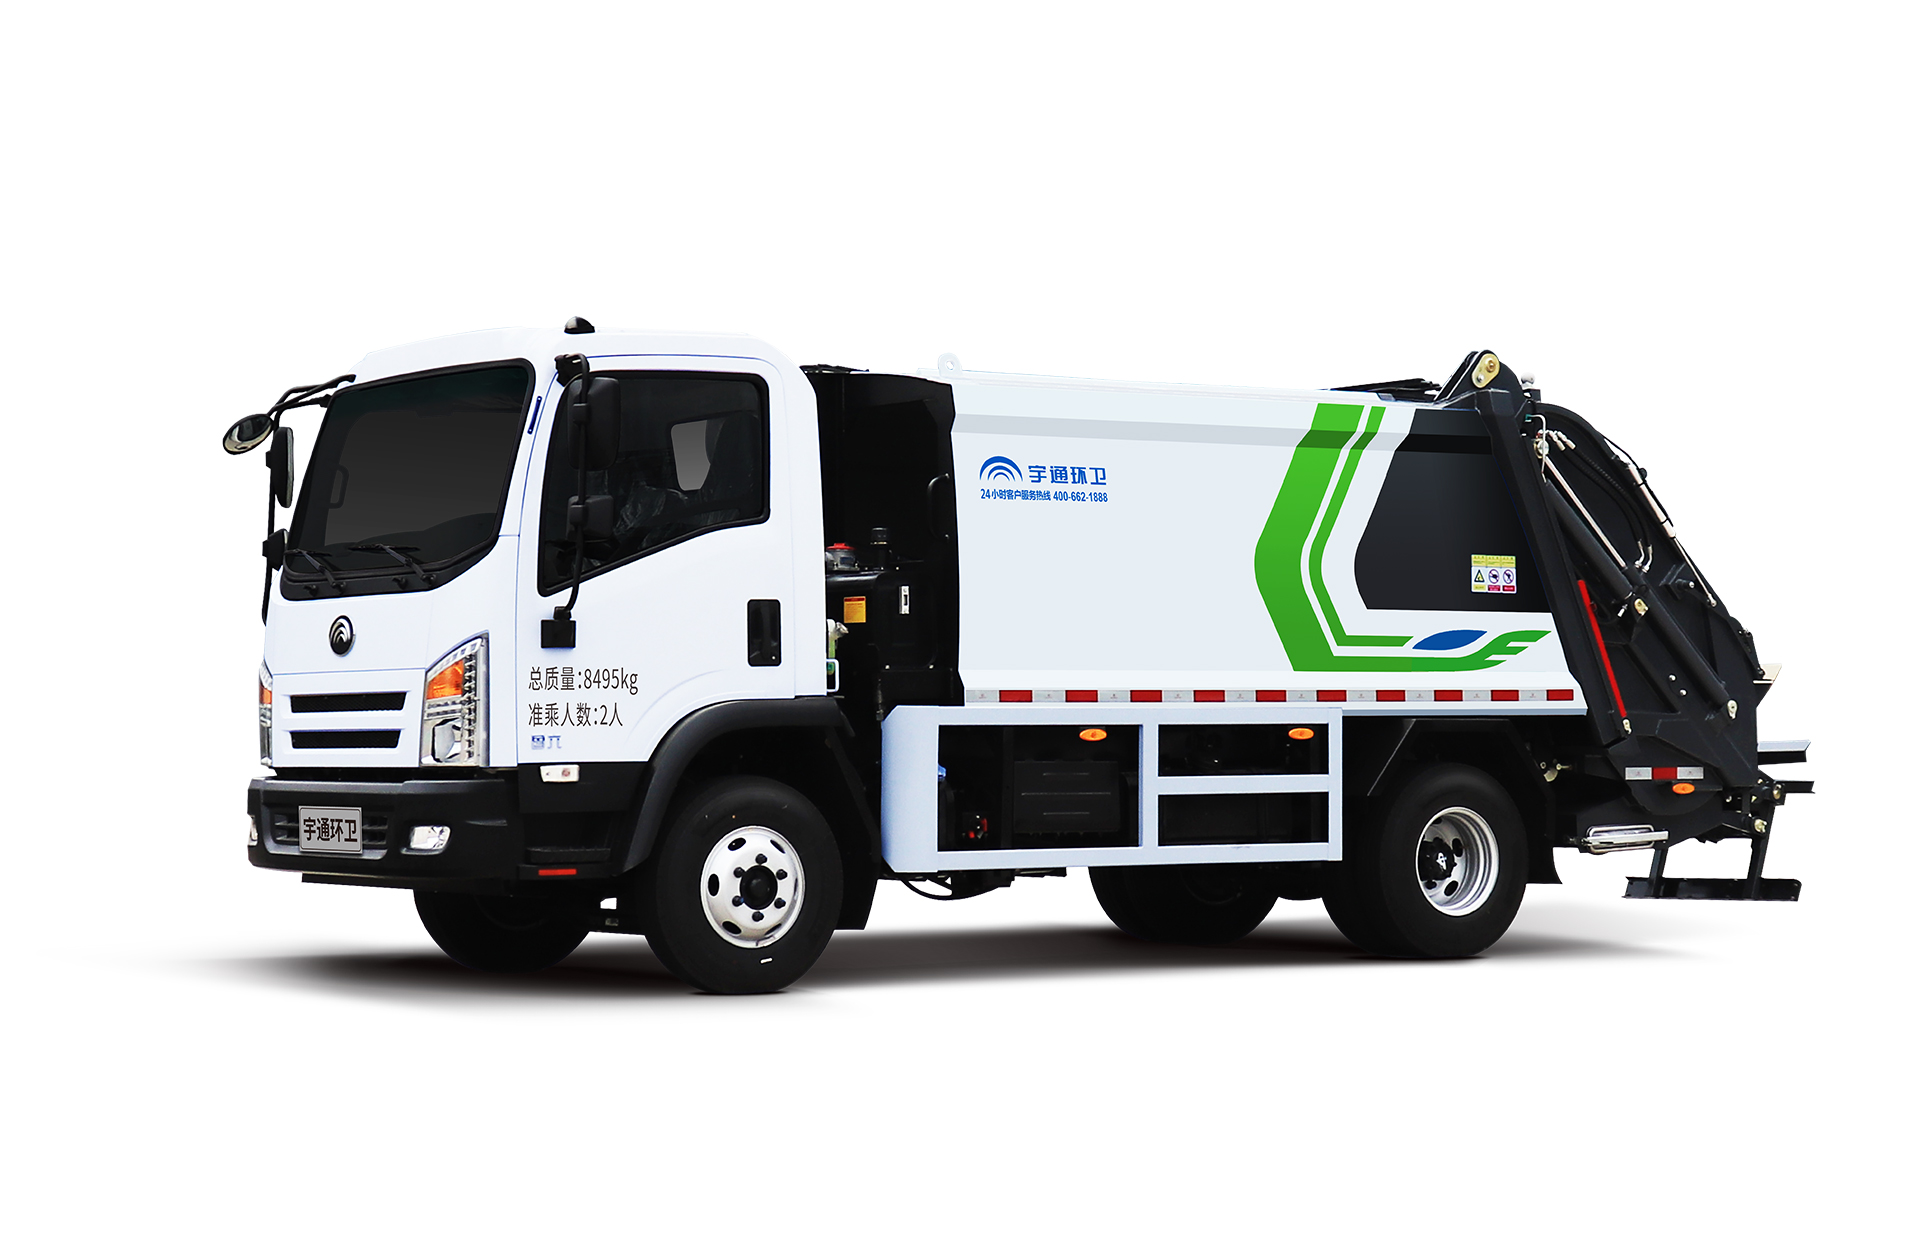 8t壓縮式垃圾車 宇通環衛壓縮式垃圾車主要具有裝載能力強、垃圾可壓縮、密封性能好等特點。